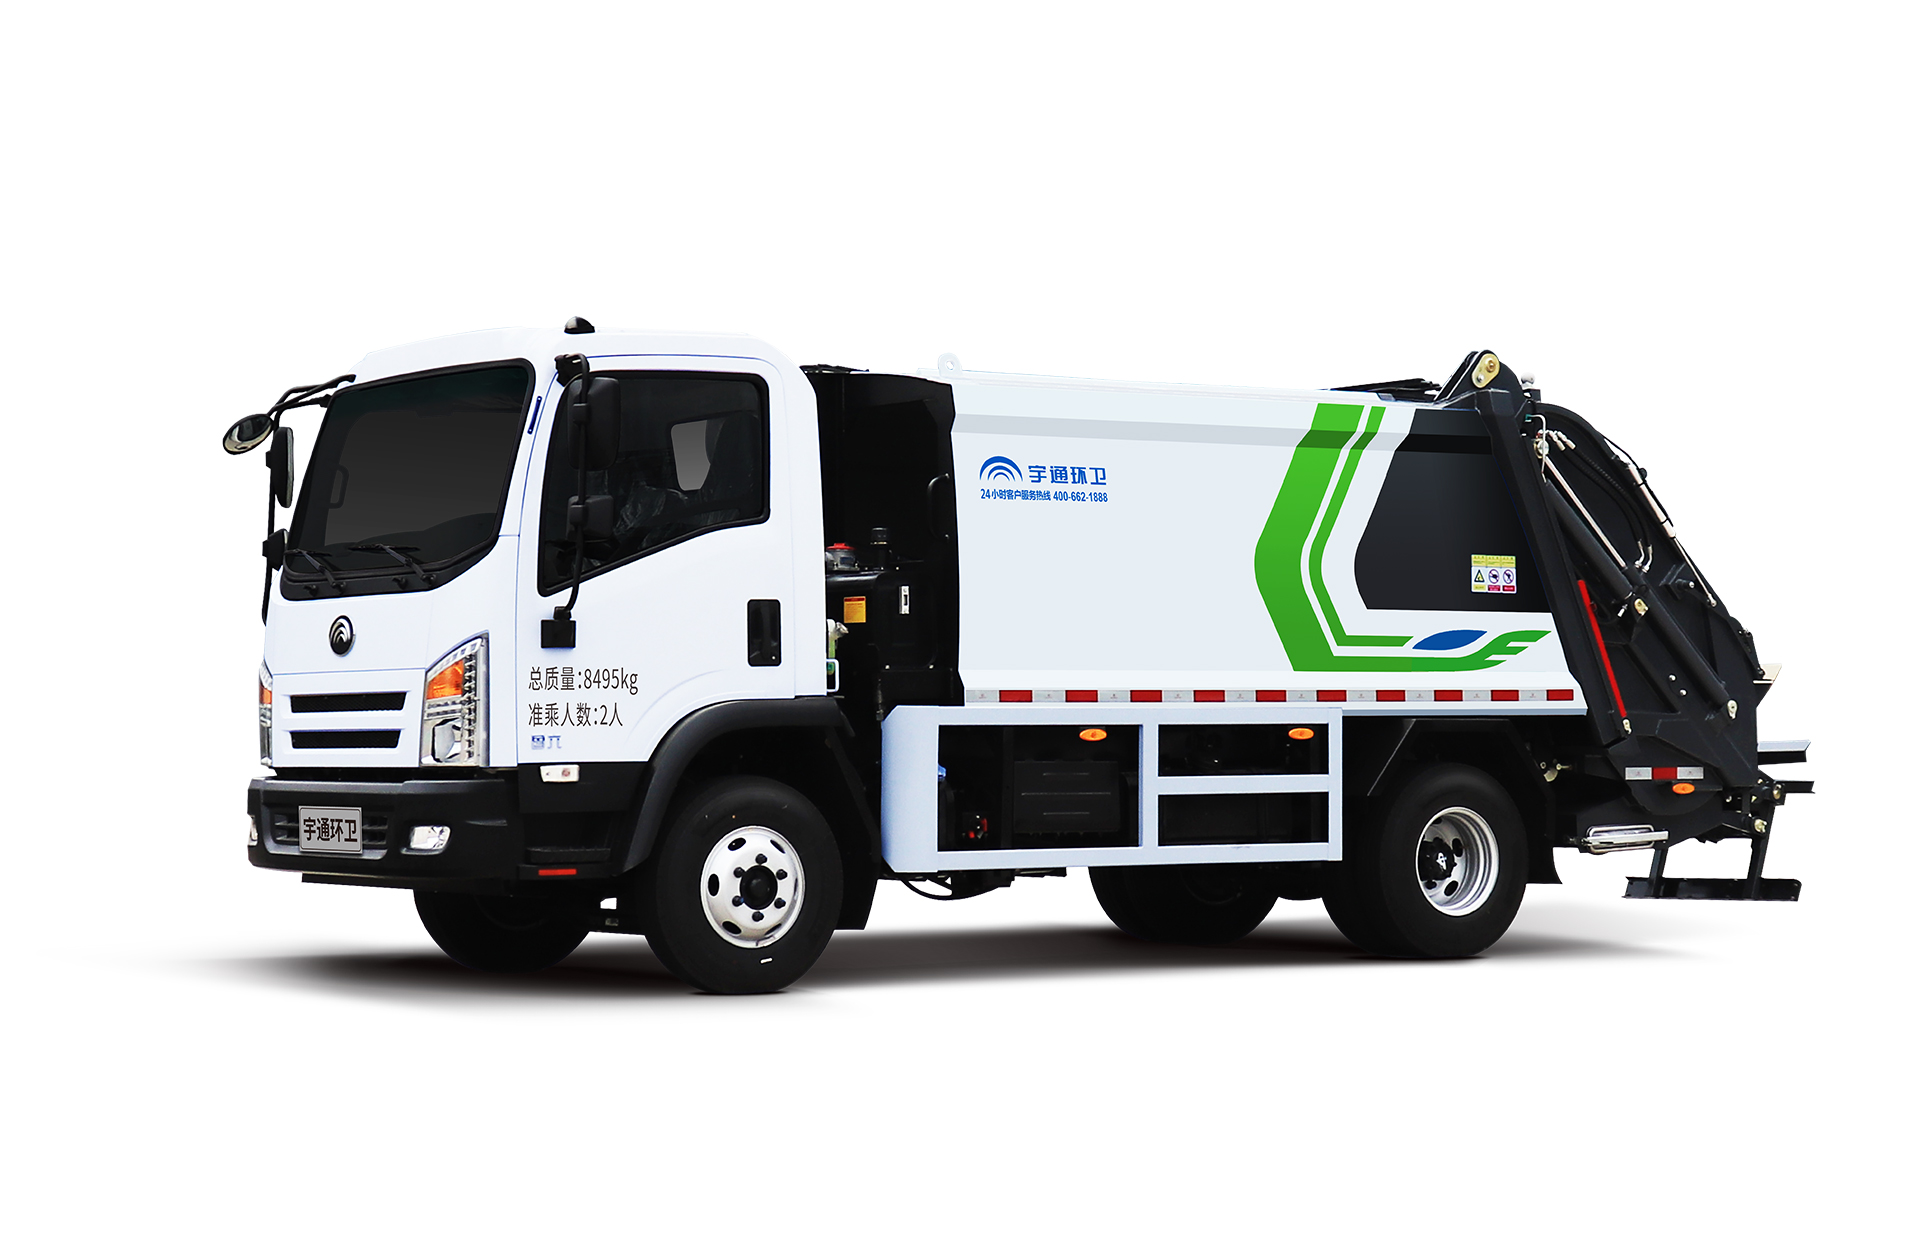 8t壓縮式垃圾車 宇通環衛壓縮式垃圾車主要具有裝載能力強、垃圾可壓縮、密封性能好等特點。